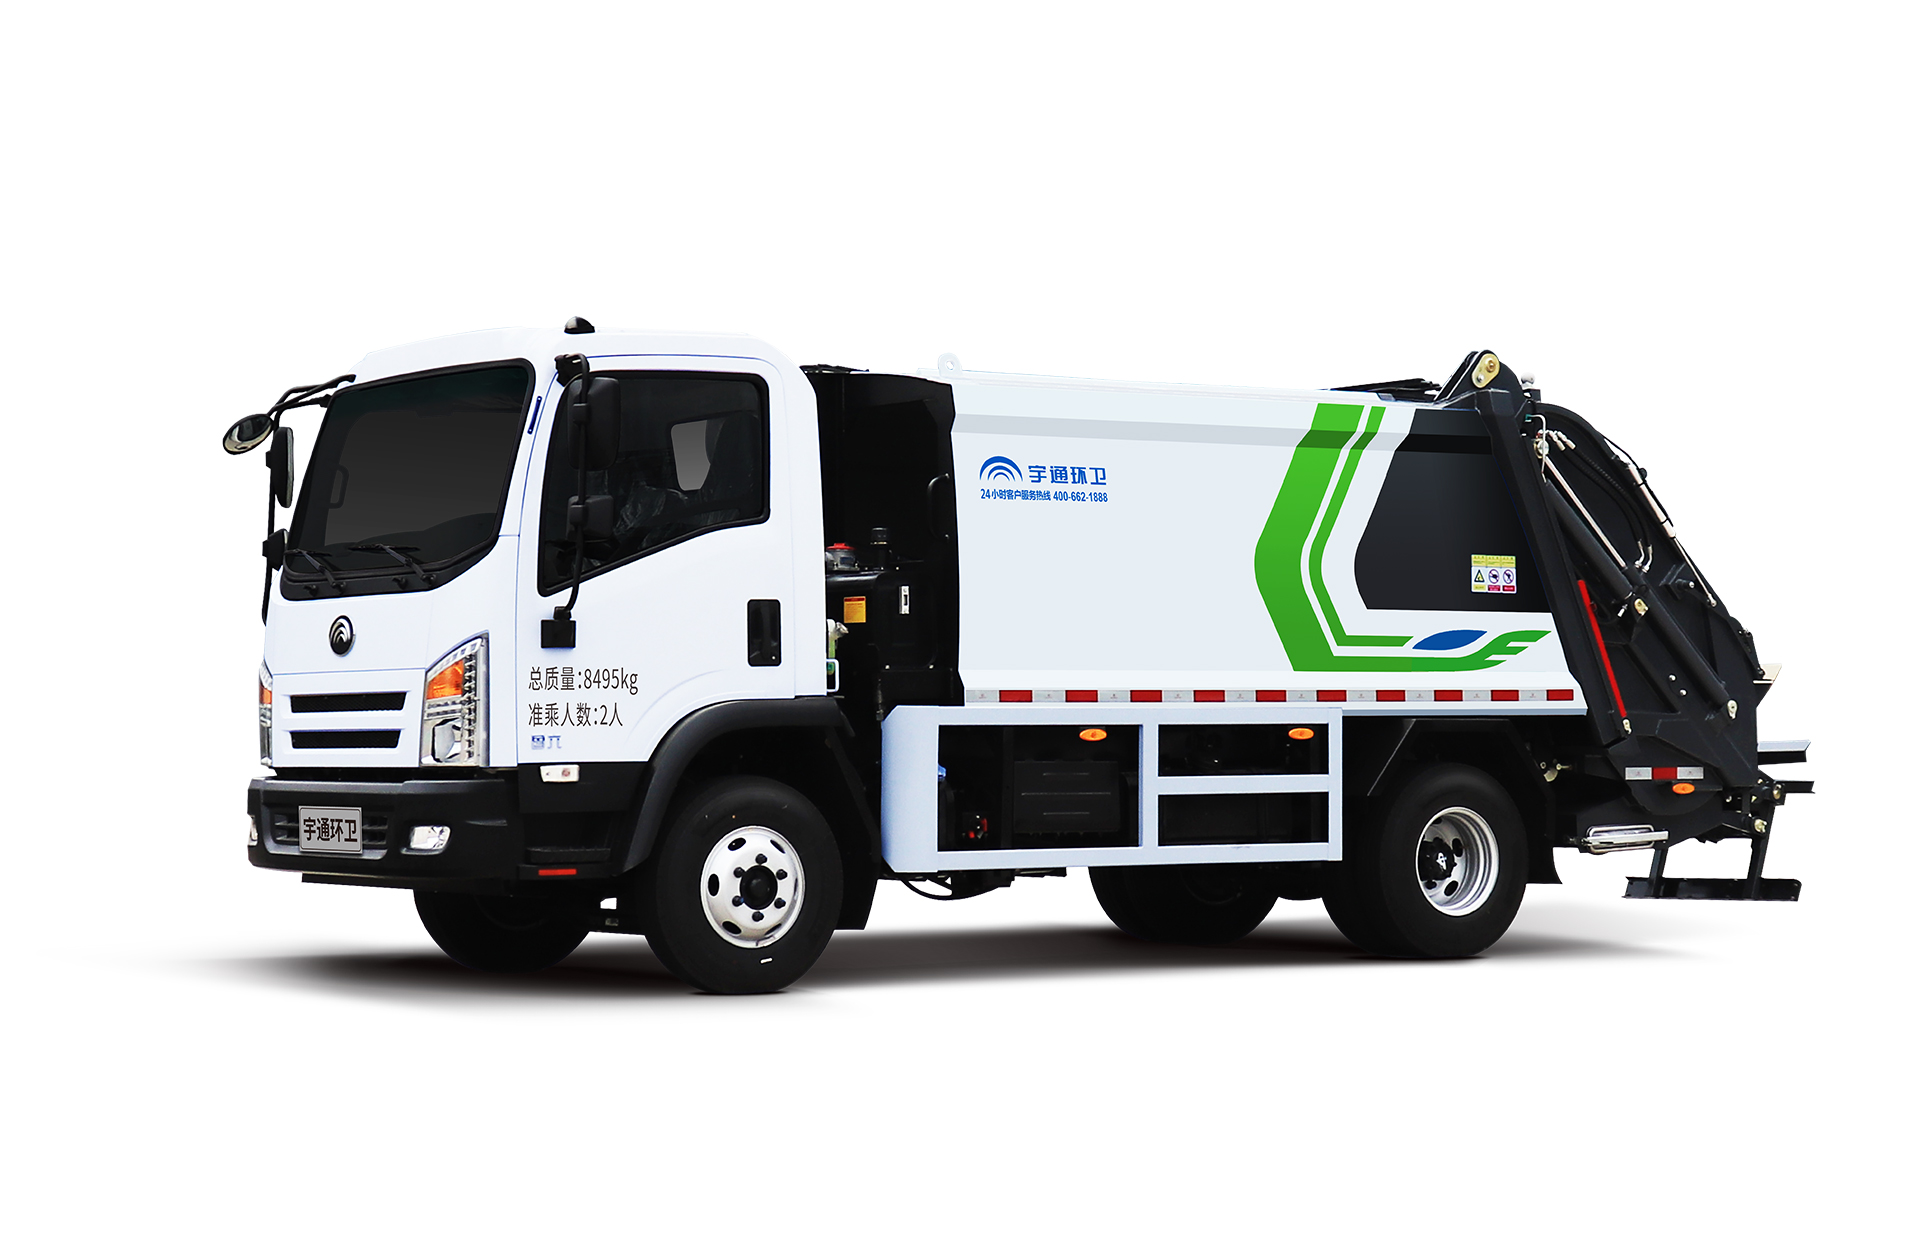 8t壓縮式垃圾車 宇通環衛壓縮式垃圾車主要具有裝載能力強、垃圾可壓縮、密封性能好等特點。